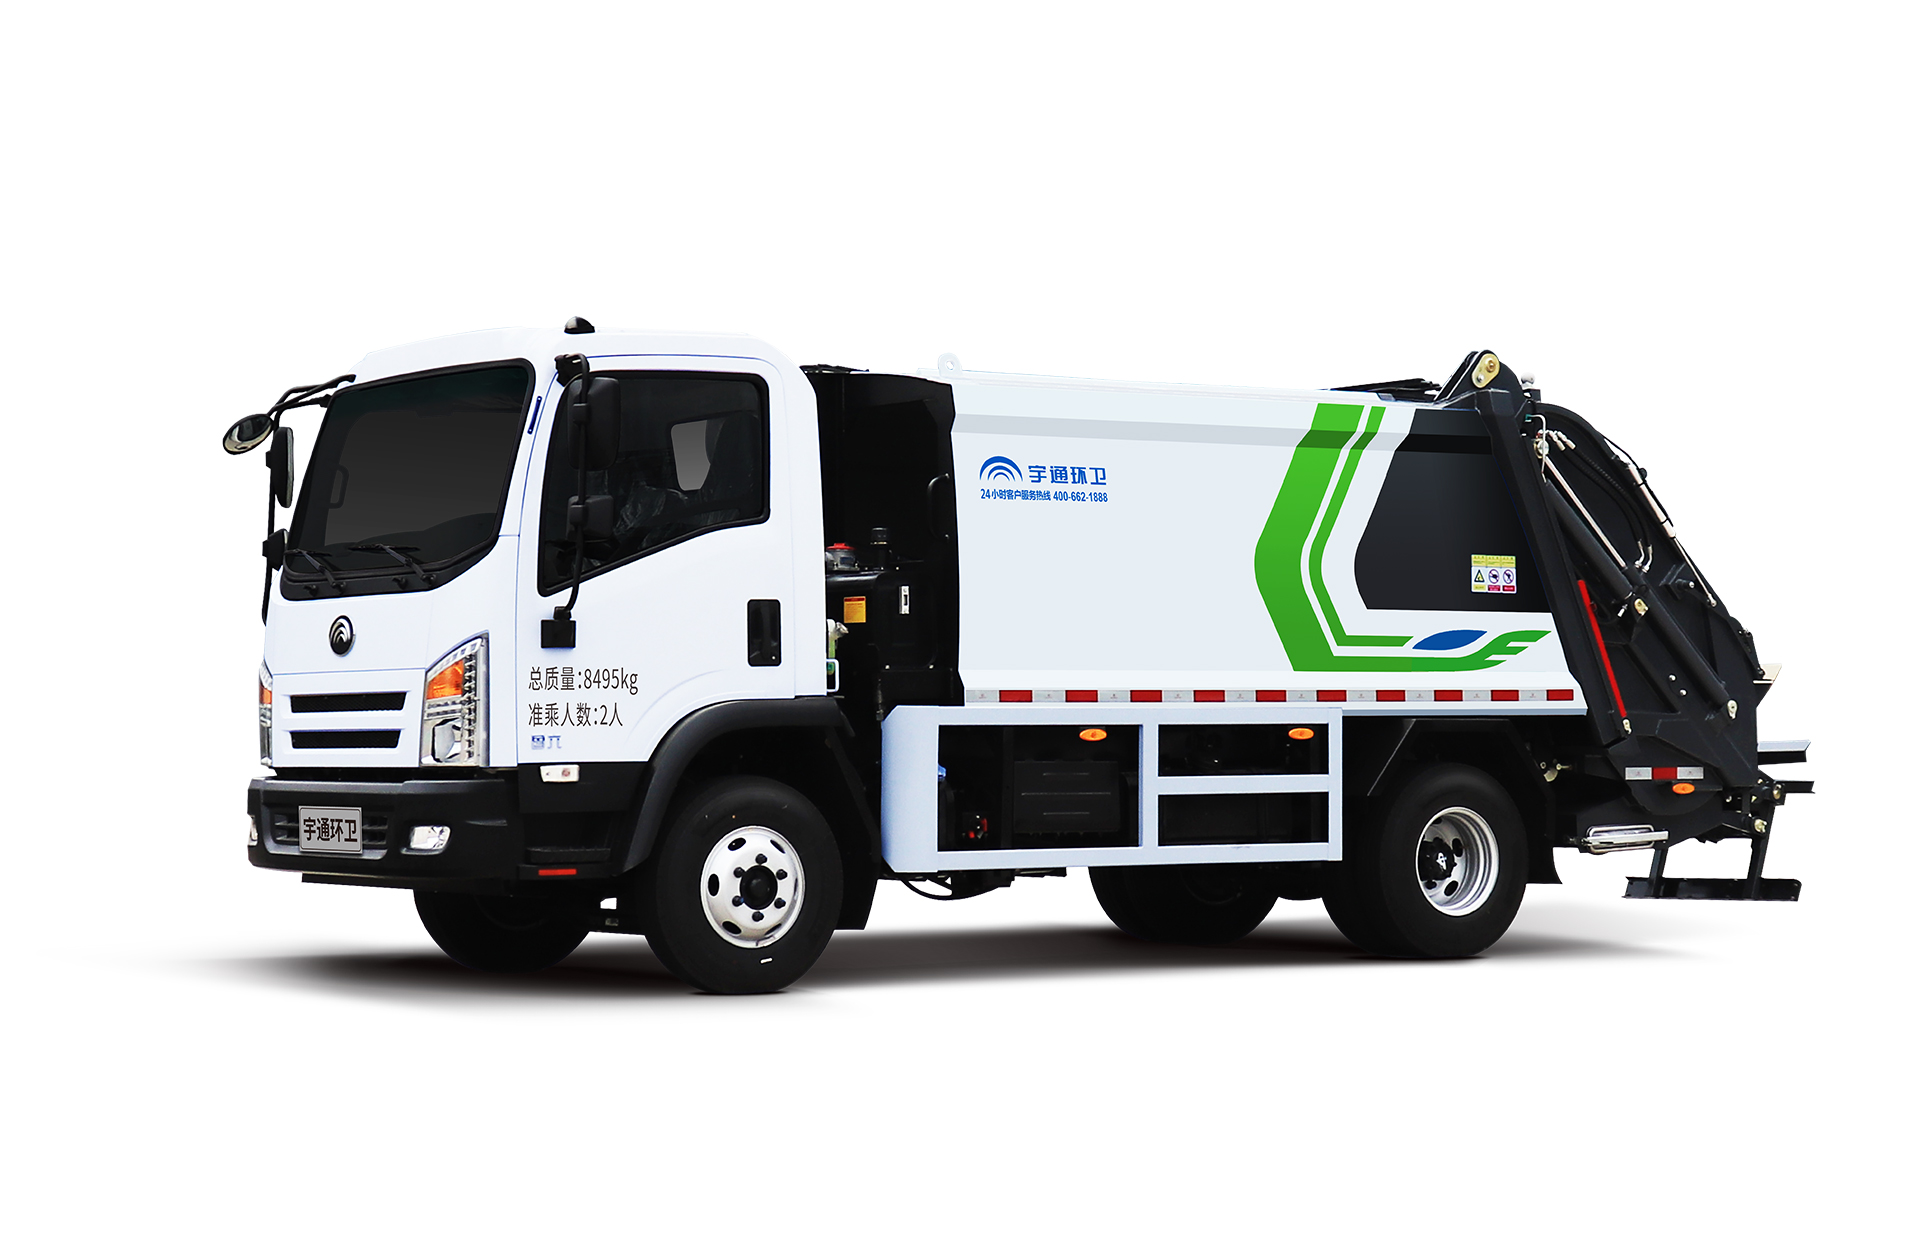 8t壓縮式垃圾車 宇通環衛壓縮式垃圾車主要具有裝載能力強、垃圾可壓縮、密封性能好等特點。